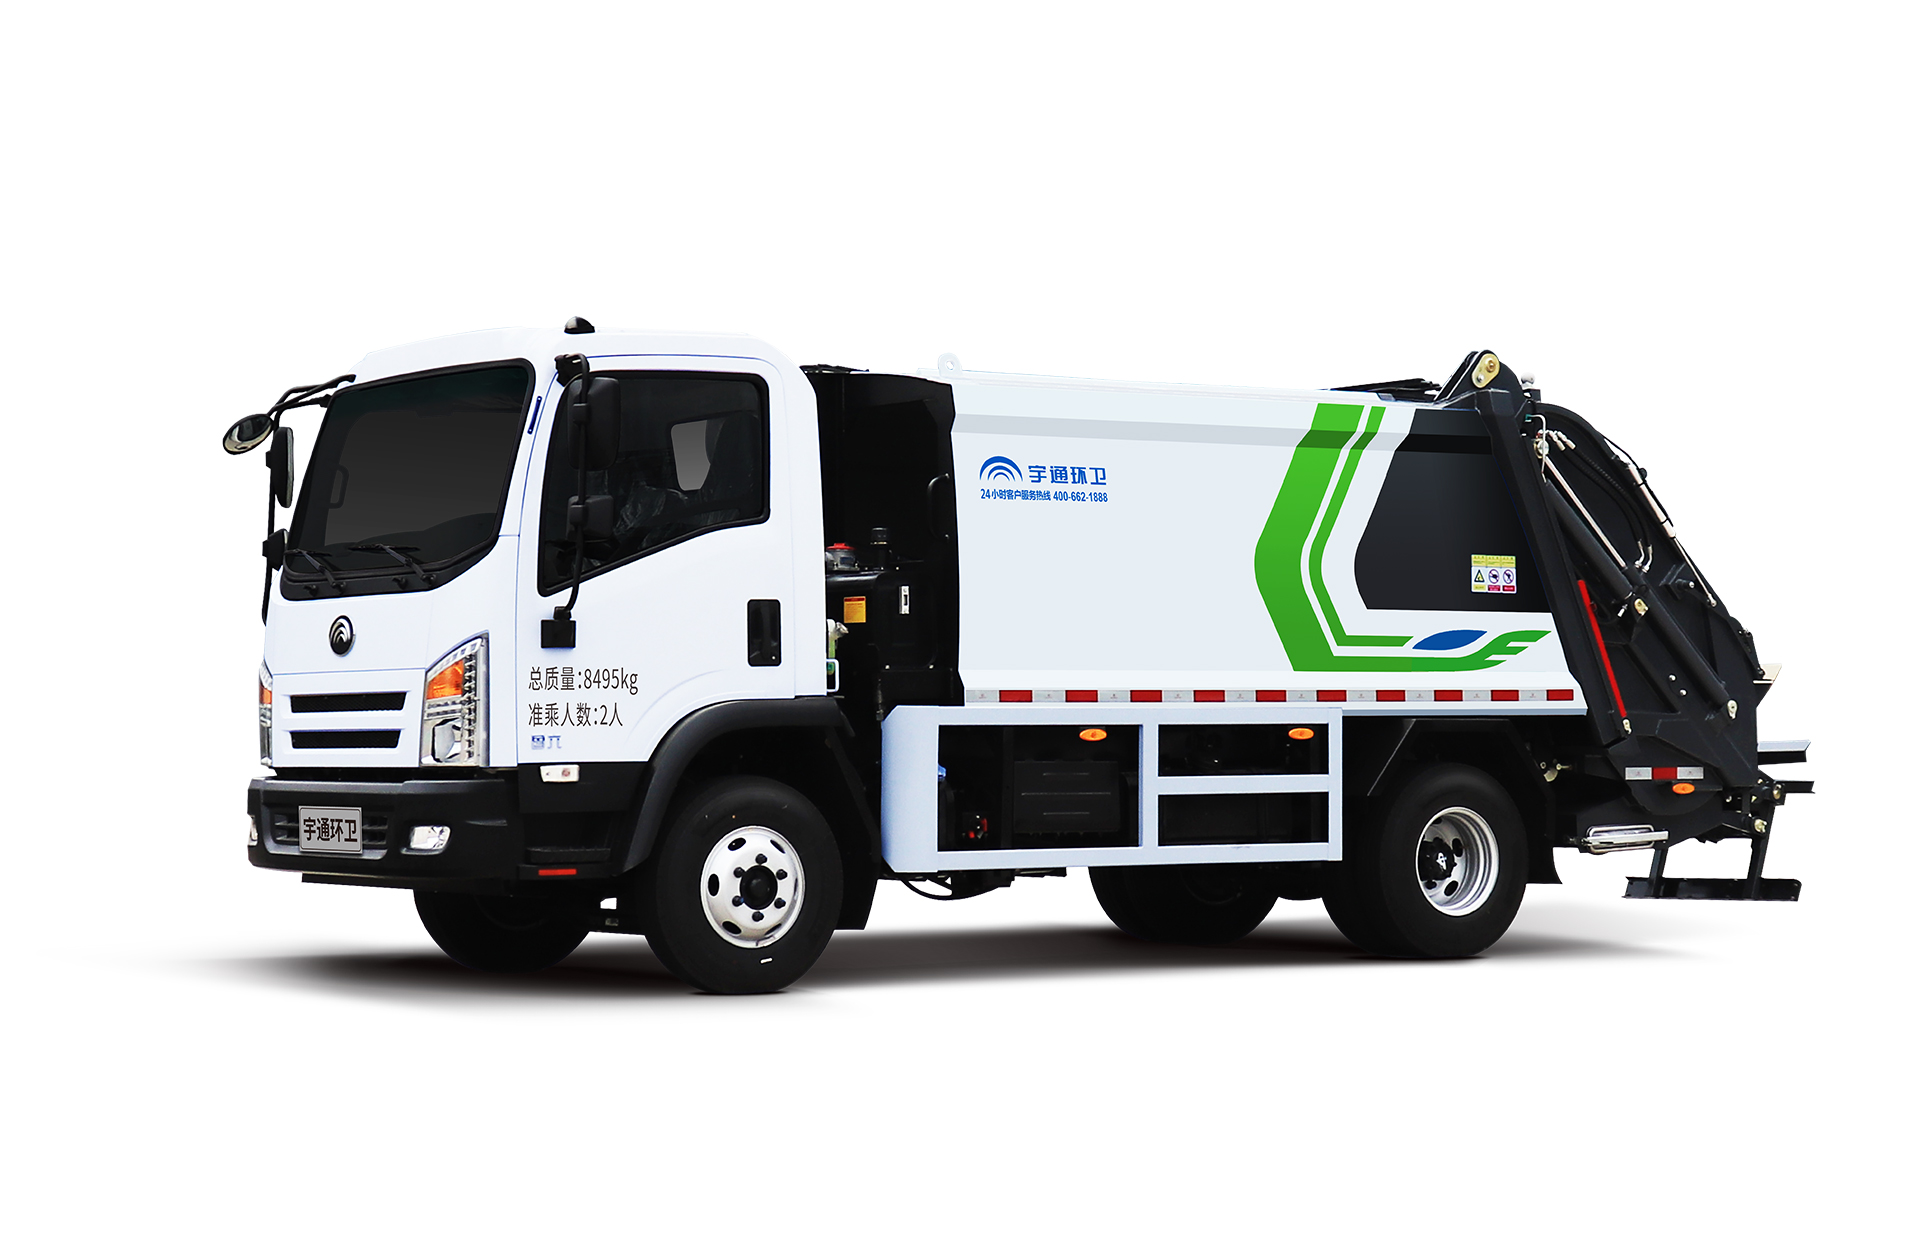 8t壓縮式垃圾車 宇通環衛壓縮式垃圾車主要具有裝載能力強、垃圾可壓縮、密封性能好等特點。